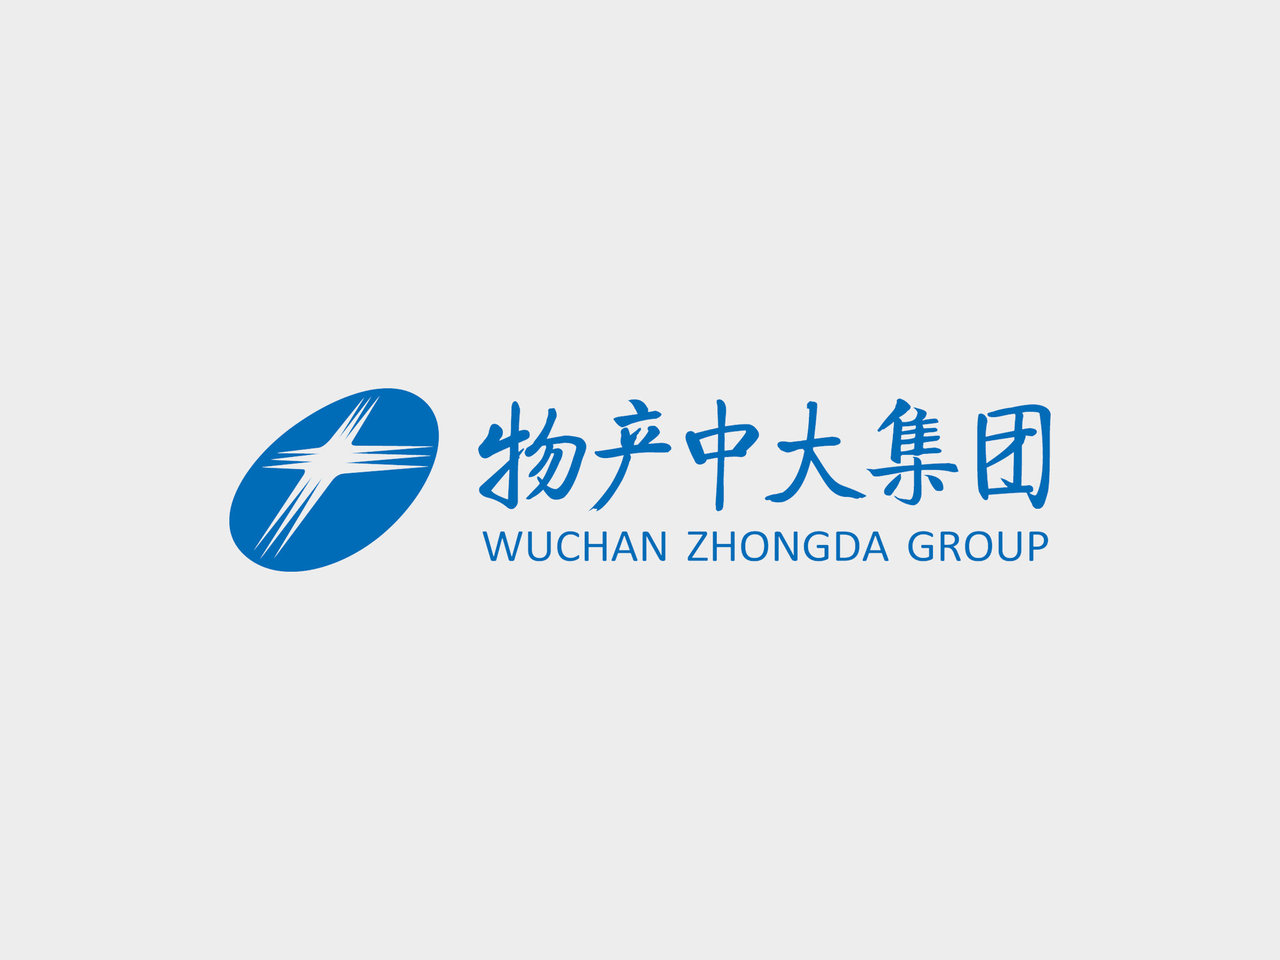 China Rundong Auto Group - Crunchbase Company Profile & Funding